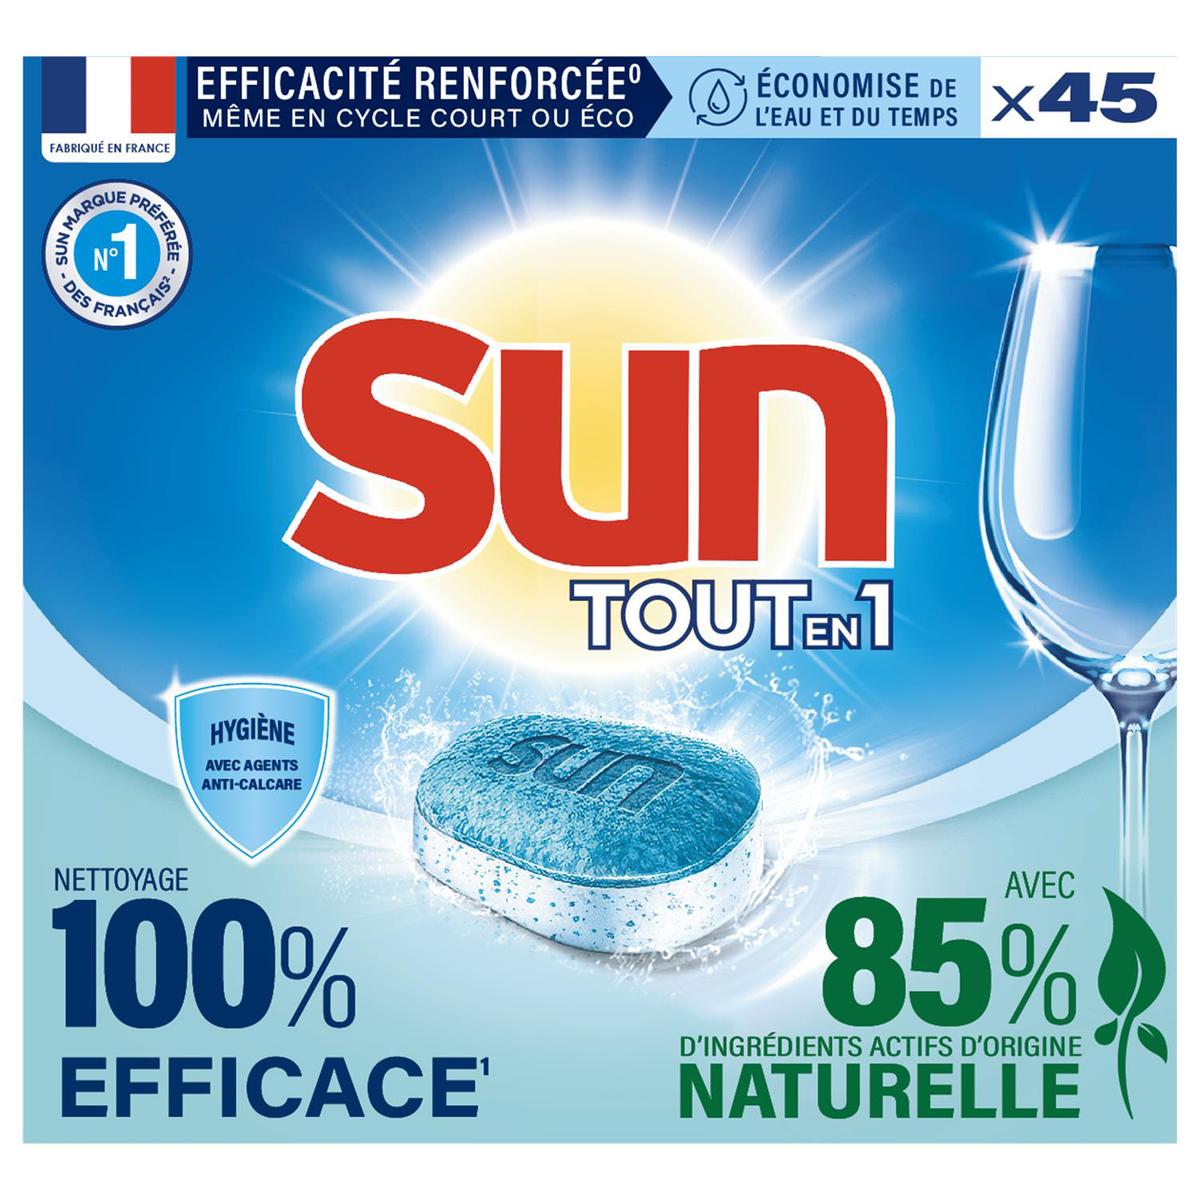 Carrefour Sel Régénérant Sel pour Lave-Vaisselle 4 x 1 kg